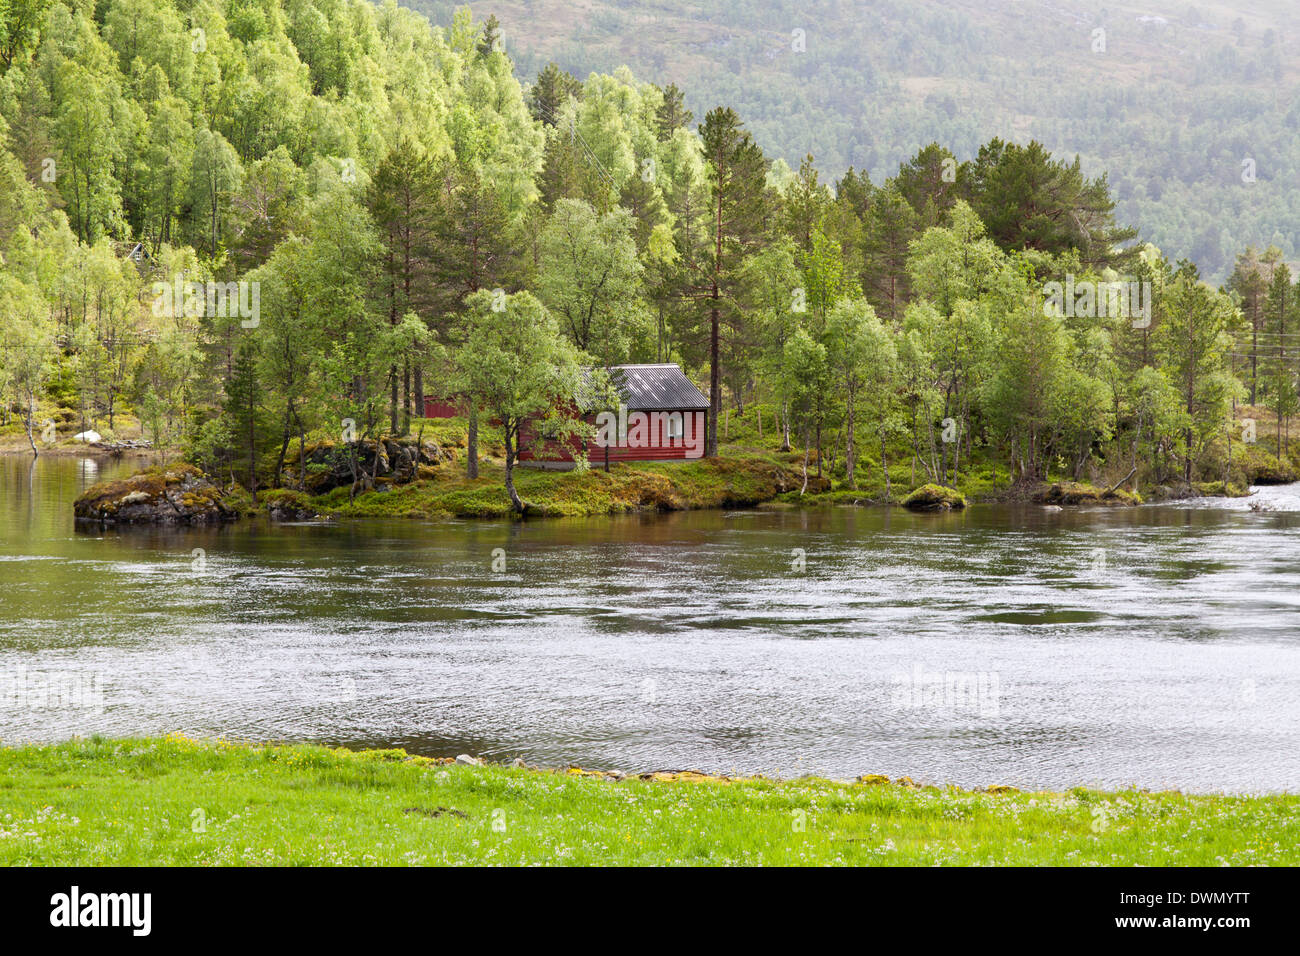 Norvegia paesaggio con pineta, fiume e fishman house Foto Stock